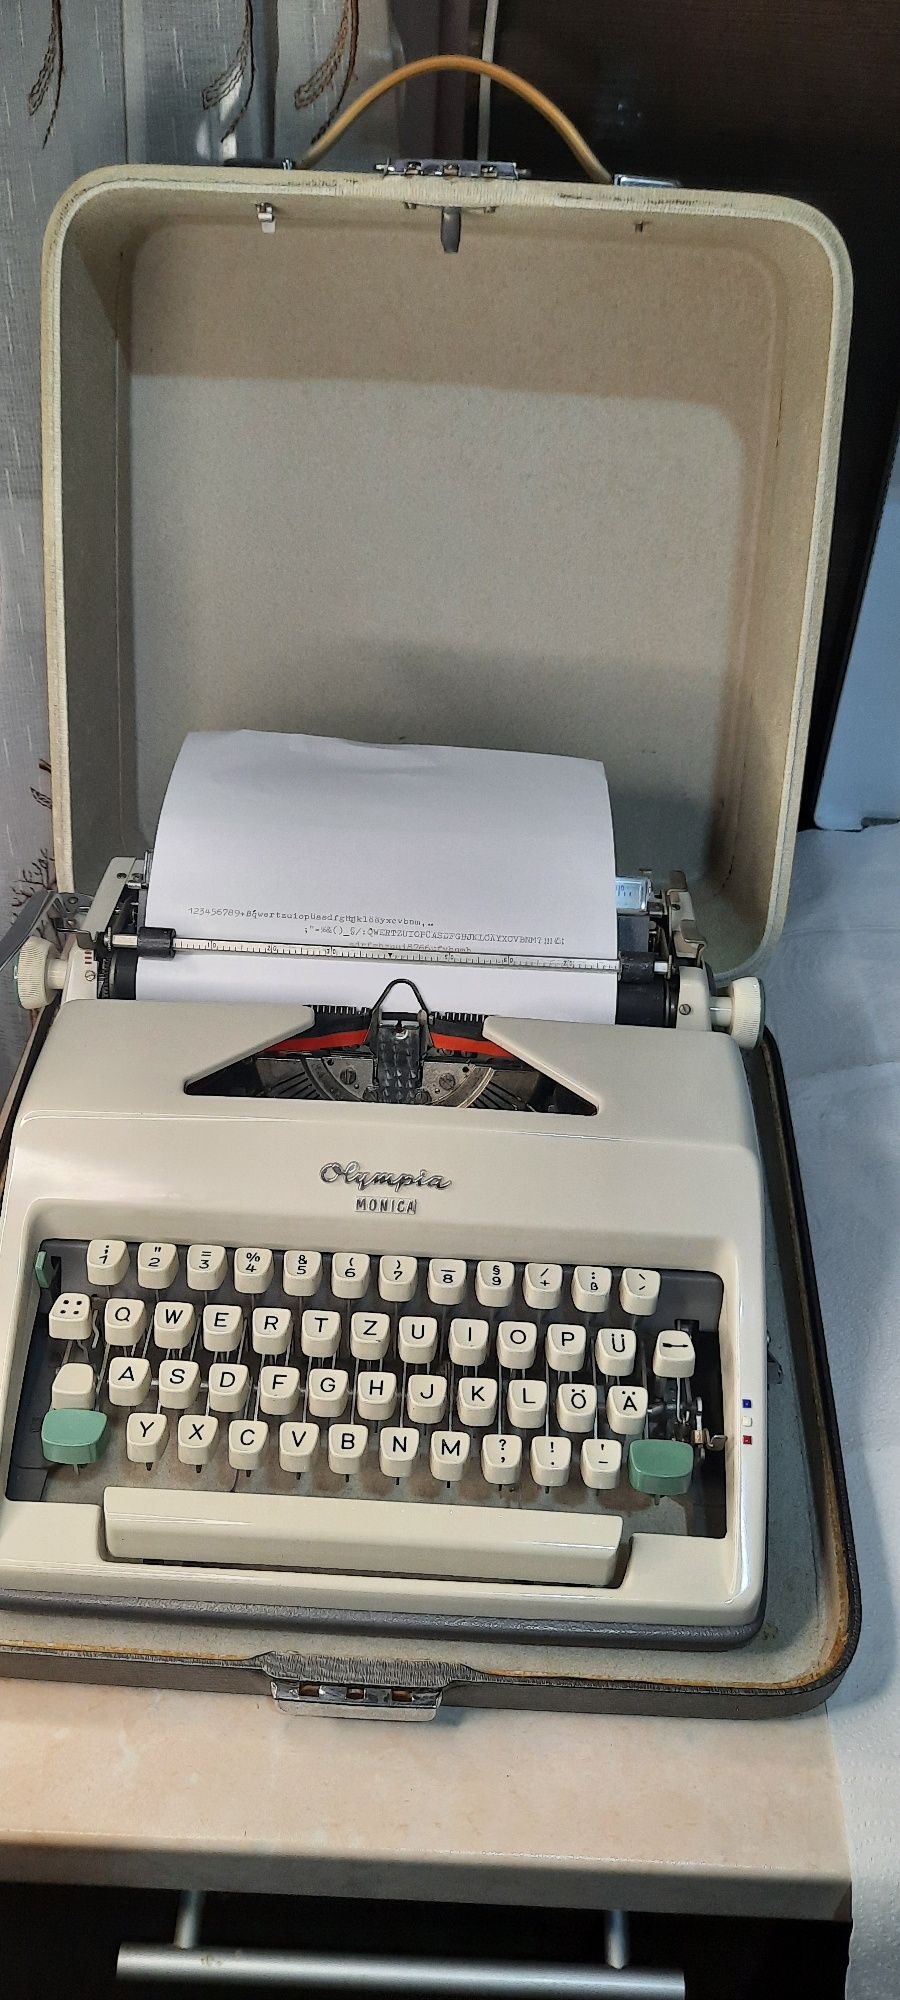 Mașină de scris Olympia Monica impecabilă